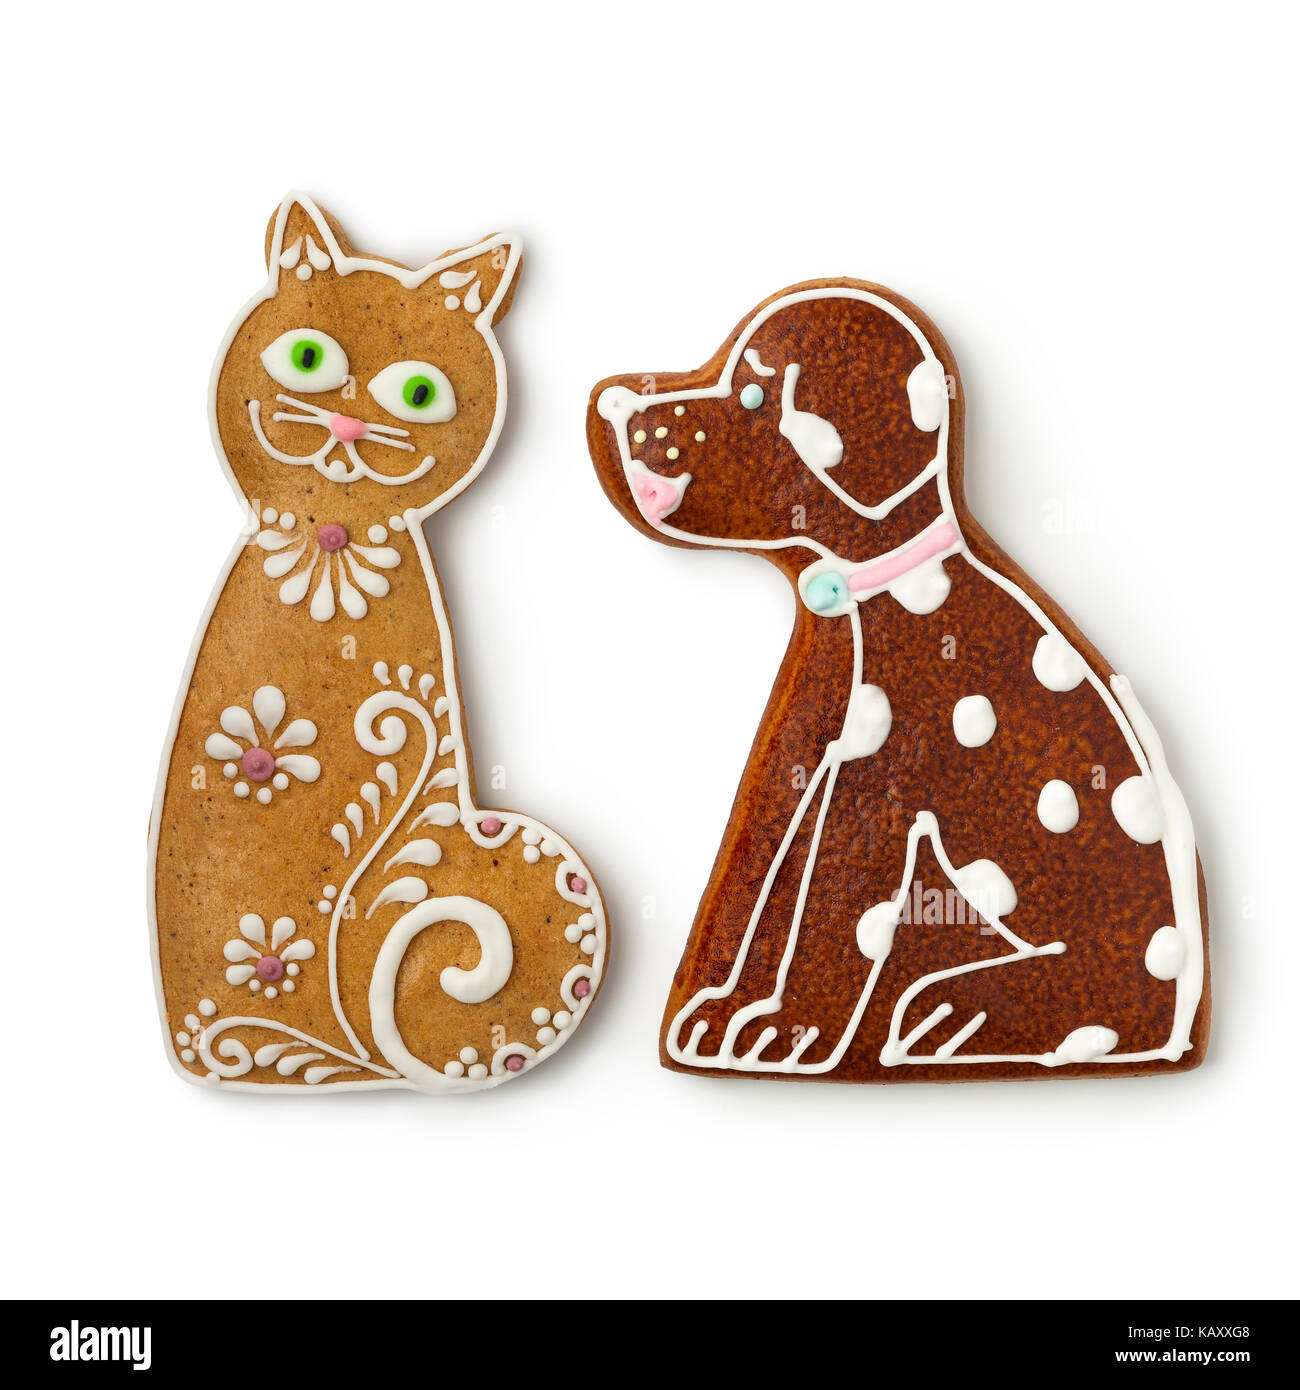 Chat et chien ginger cookies sur fond blanc Banque D'Images